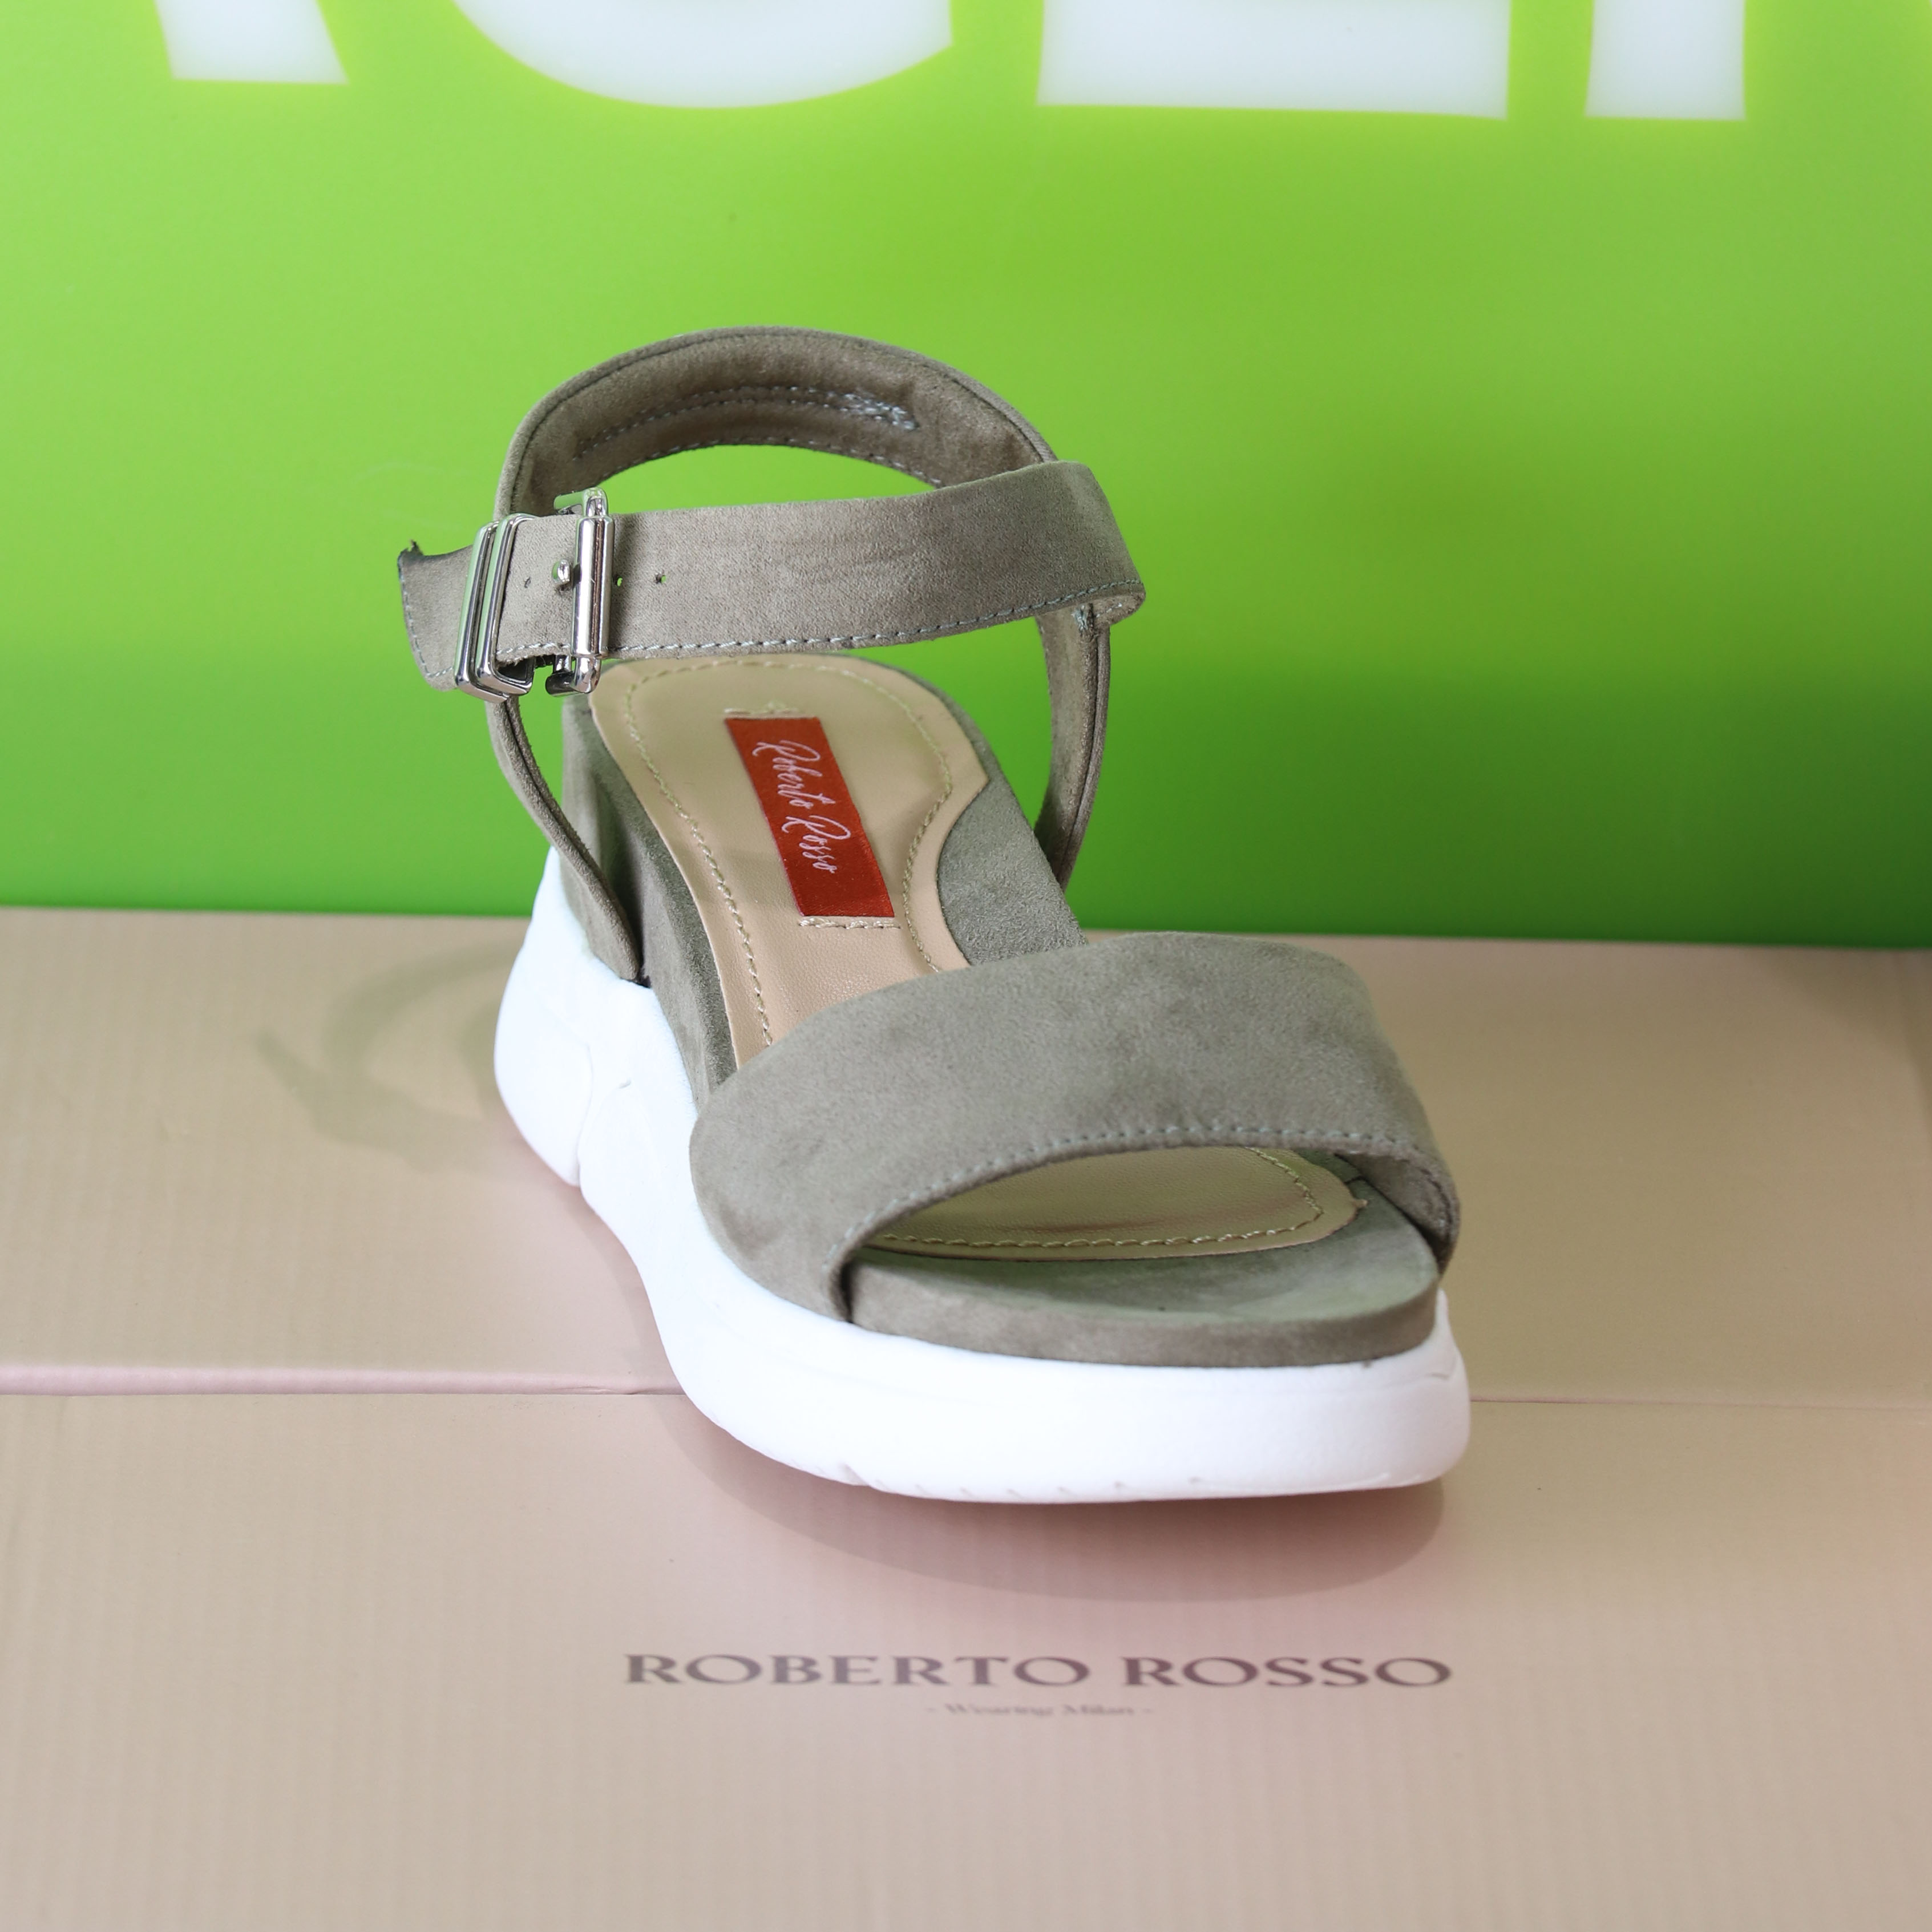 roberto rosso – akkira green sandal grønn sommer dame8